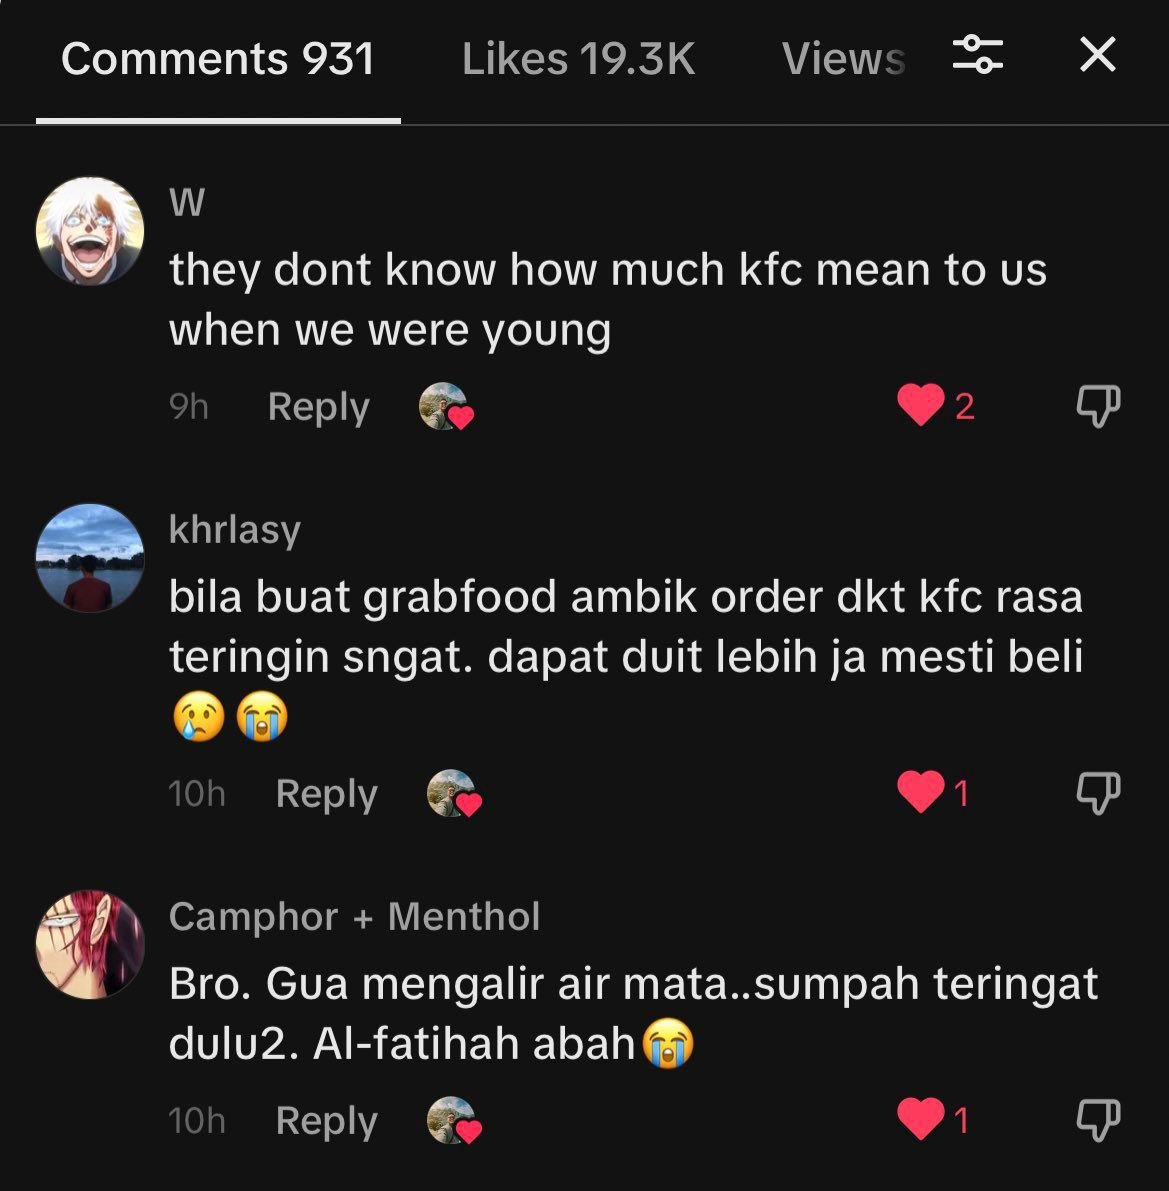 Tangkap layar dikongsi Zulfadhli yang memaparkan antara respon netizen mengenai KFC.